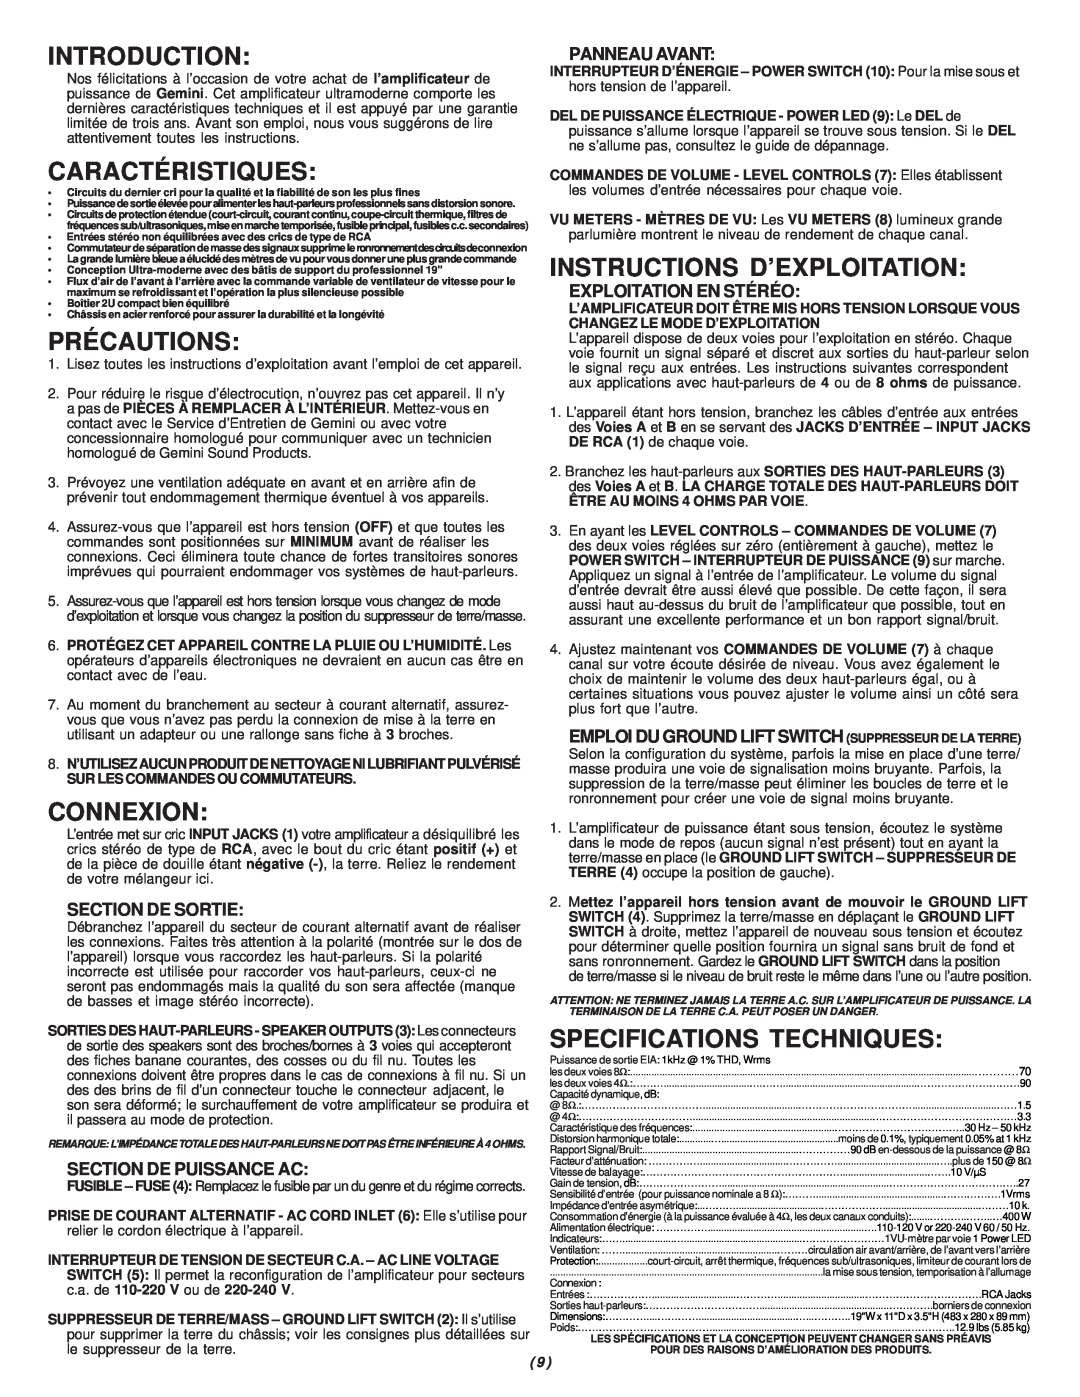 Gemini P-700 manual Introduction, Caractéristiques, Précautions, Connexion, Instructions D’Exploitation, Section De Sortie 